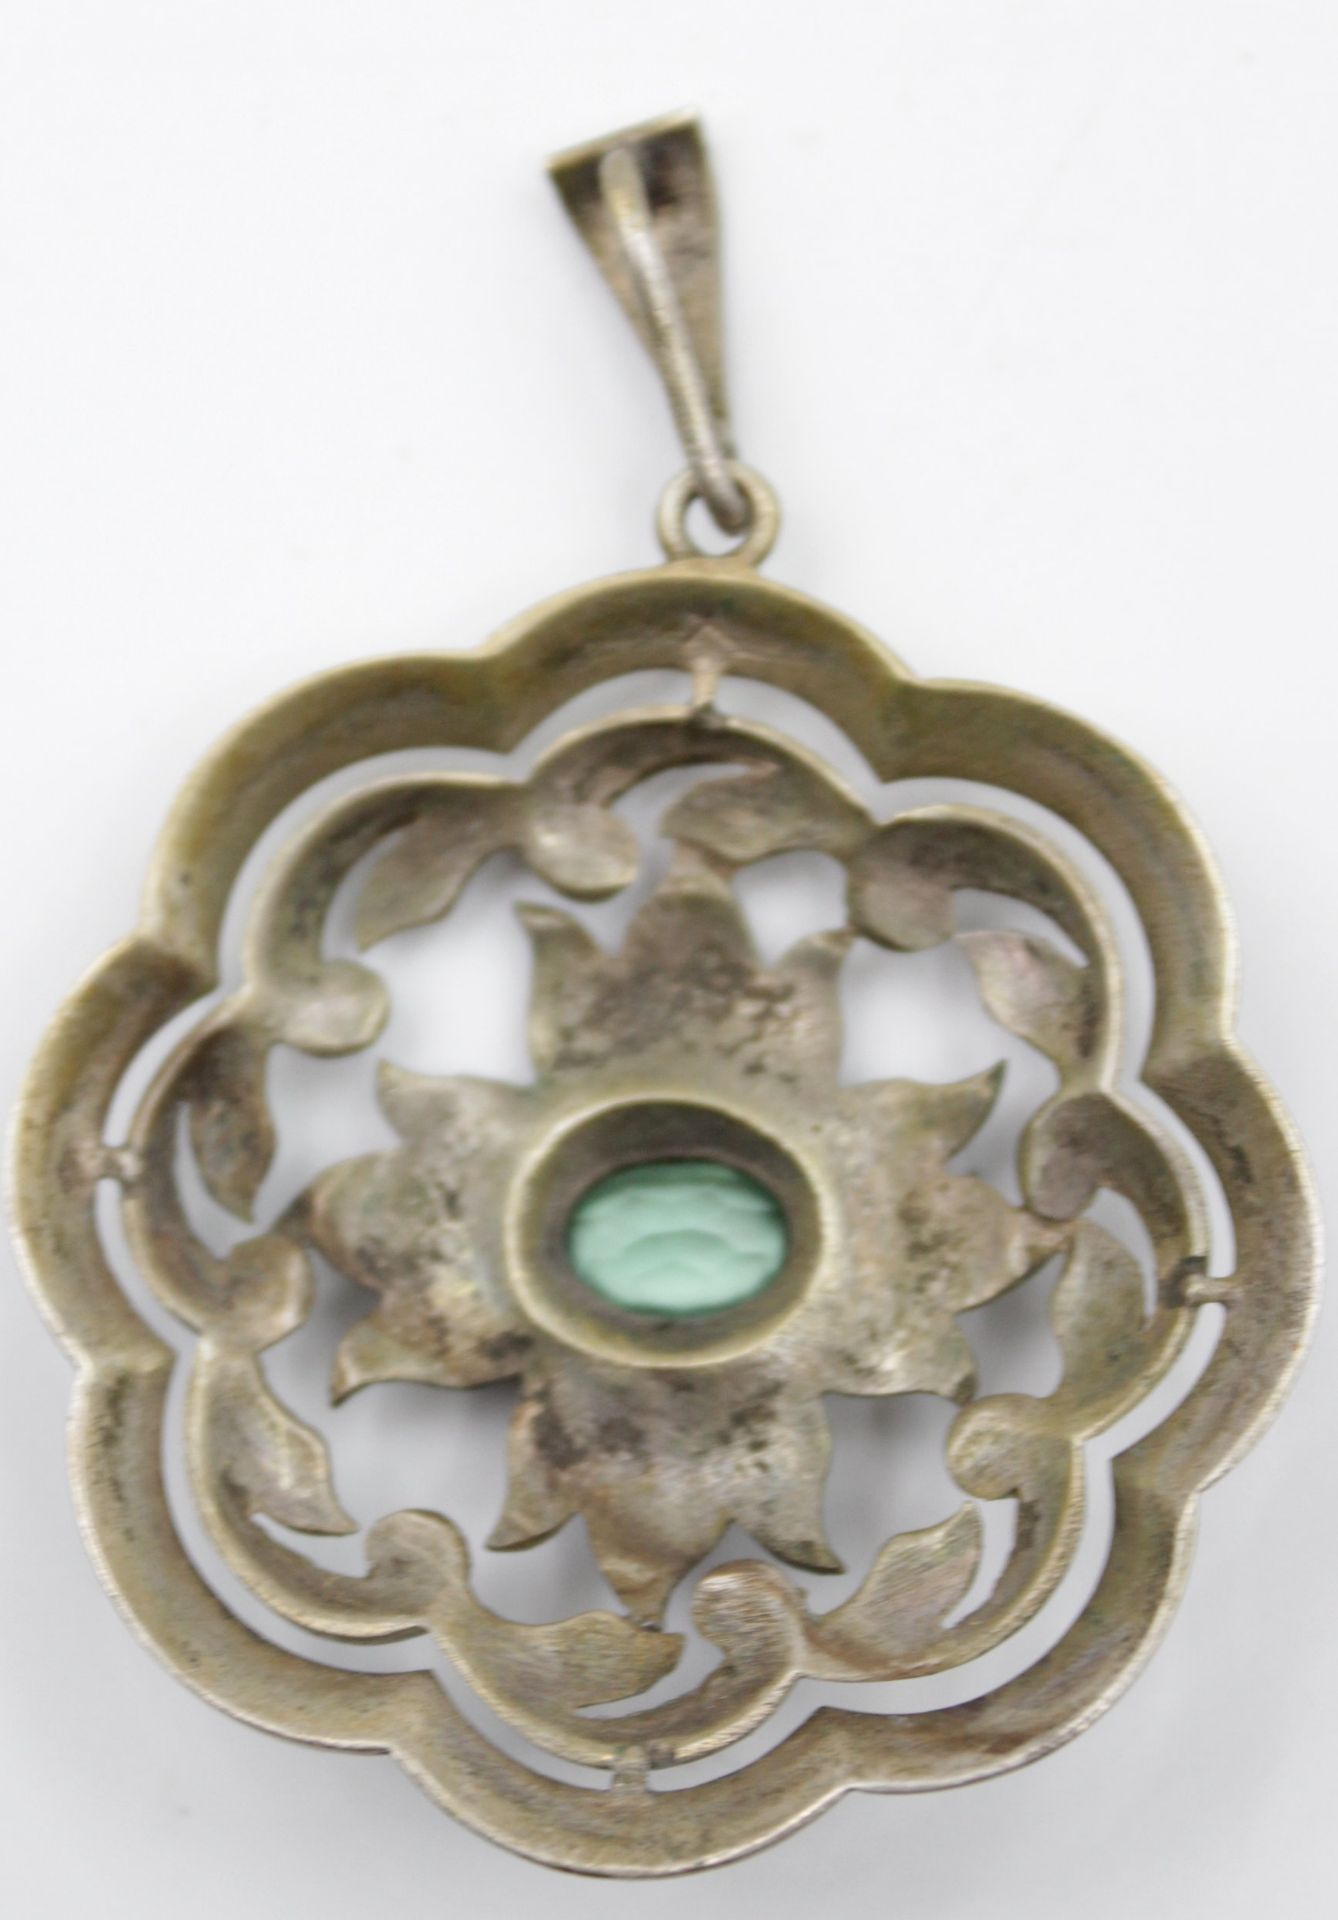 gr. Anhänger, 835er Silber, um 1920, Durchbrucharbeit, mittig grüner Stein, ca. 16,6gr., D-4,8cm. - Bild 3 aus 4